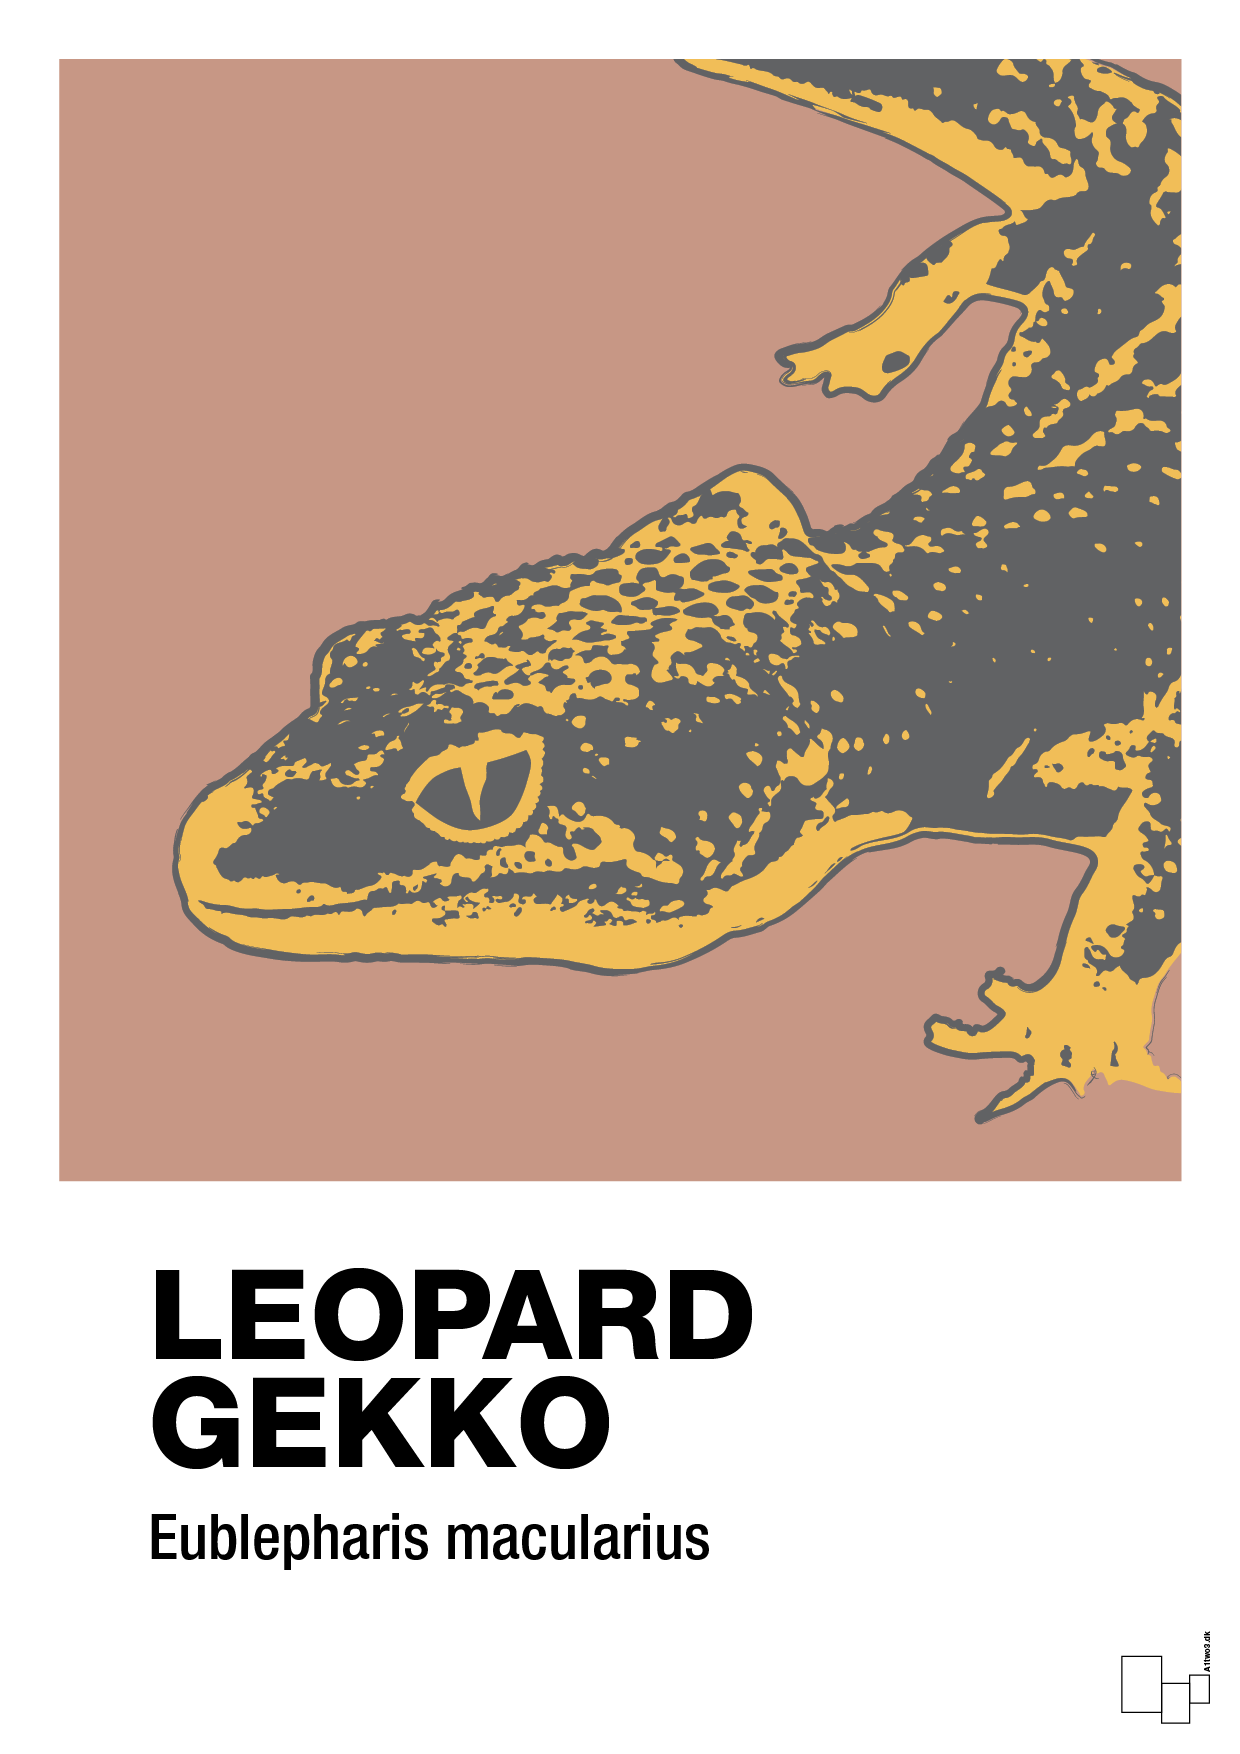 leopard gekko - Plakat med Videnskab i Powder